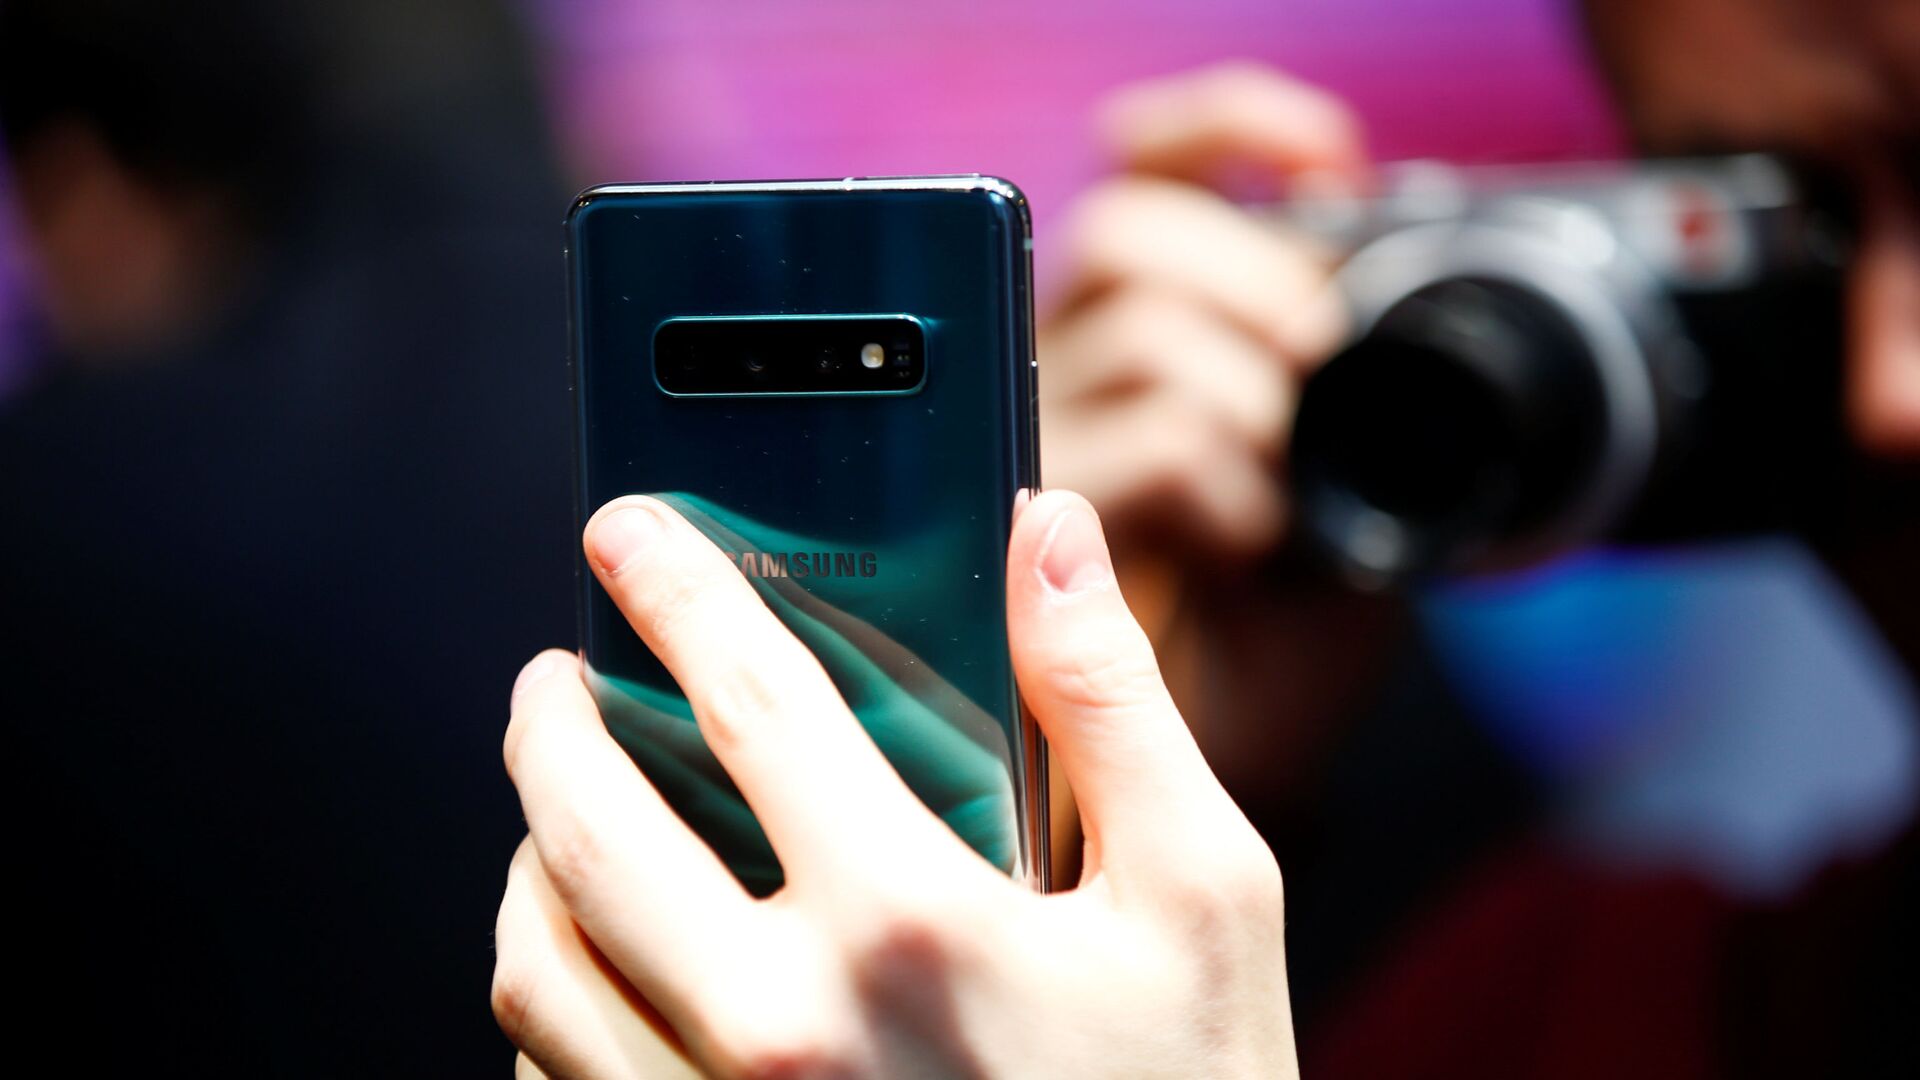 Журналист фотографирует новый Samsung Galaxy S10e  на презентации в Лондоне  - РИА Новости, 1920, 02.12.2019